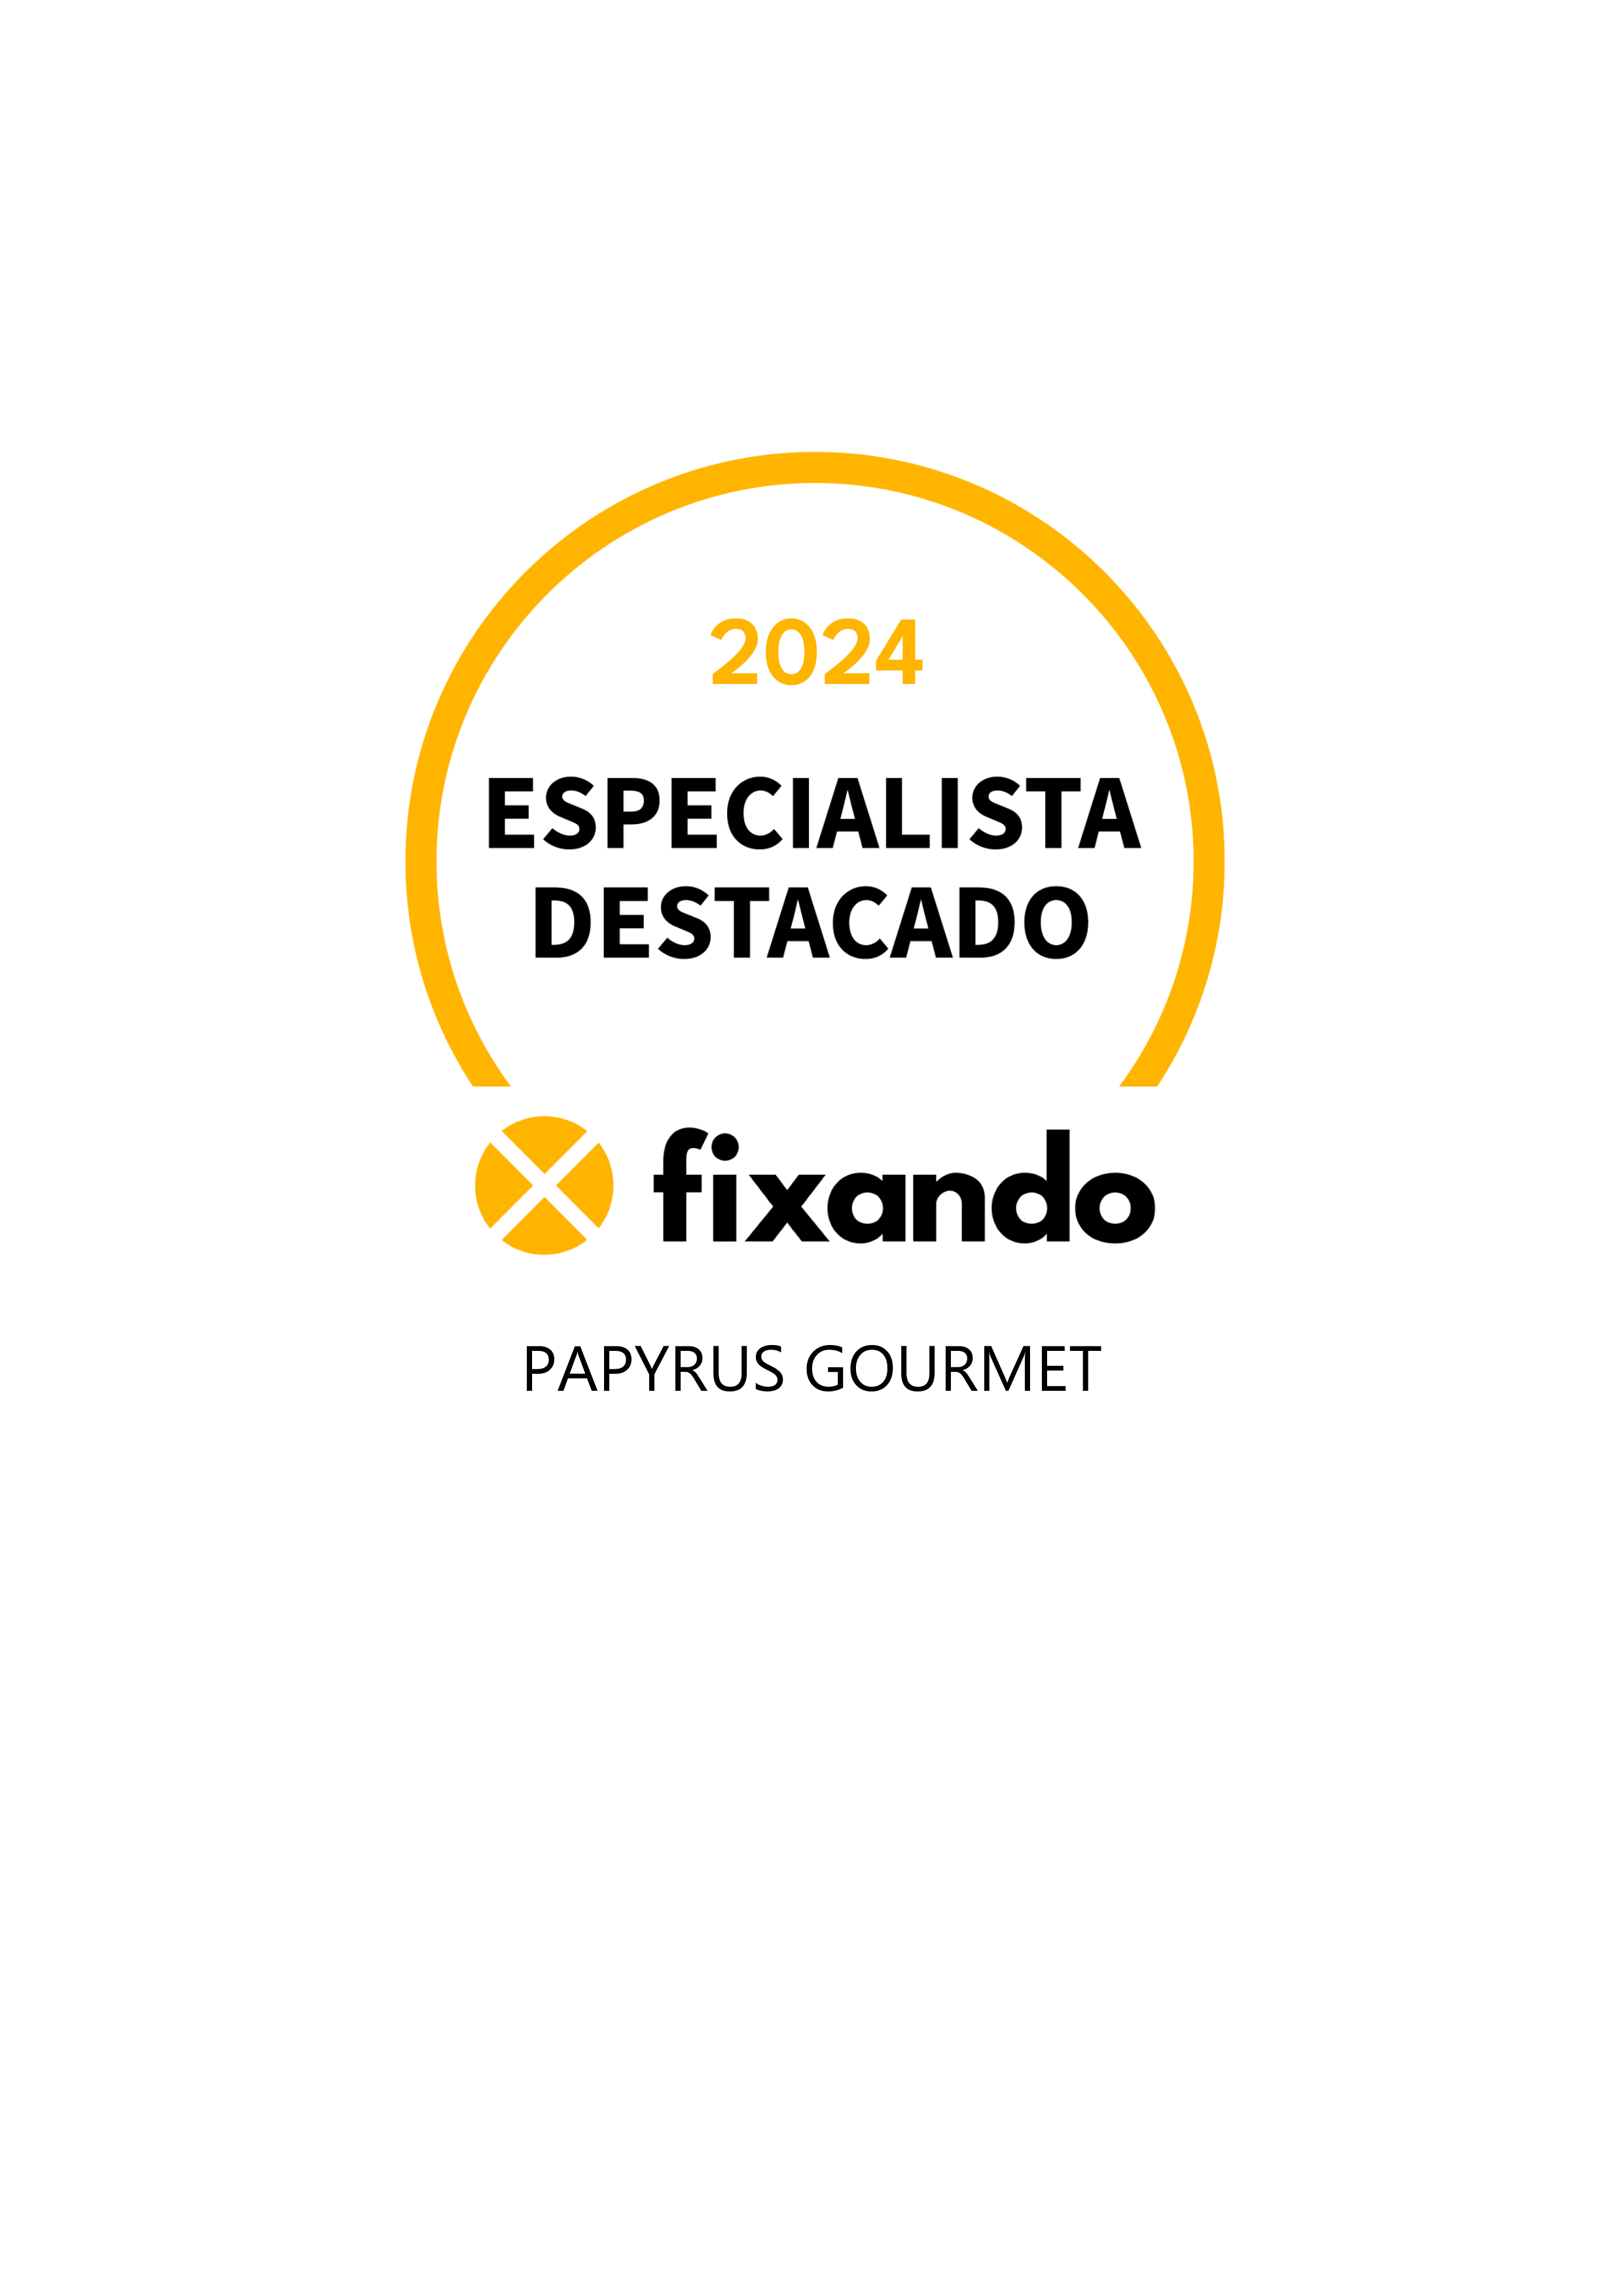 Papyrus Gourmet - Lisboa - Catering de Festas e Eventos